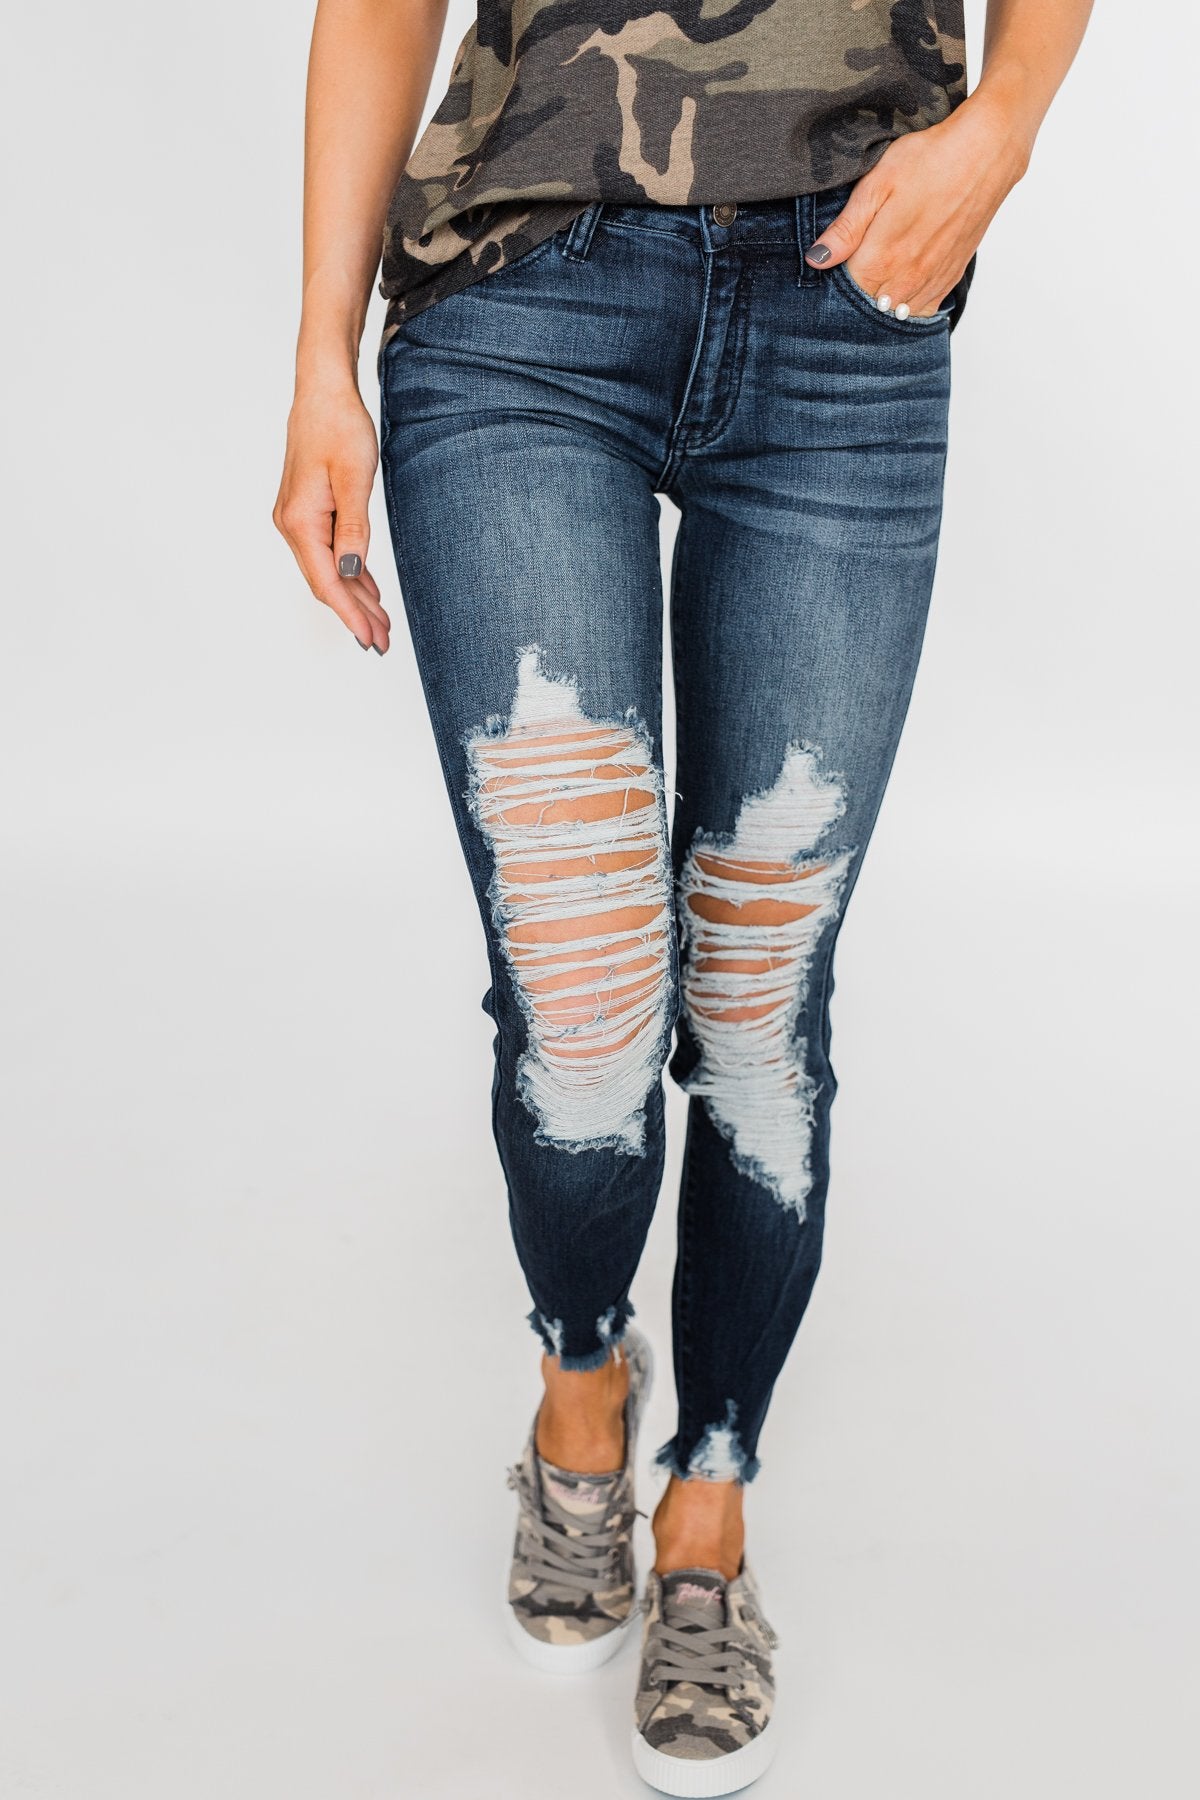 KanCan Raw Hem Skinny Jeans- Clara Wash